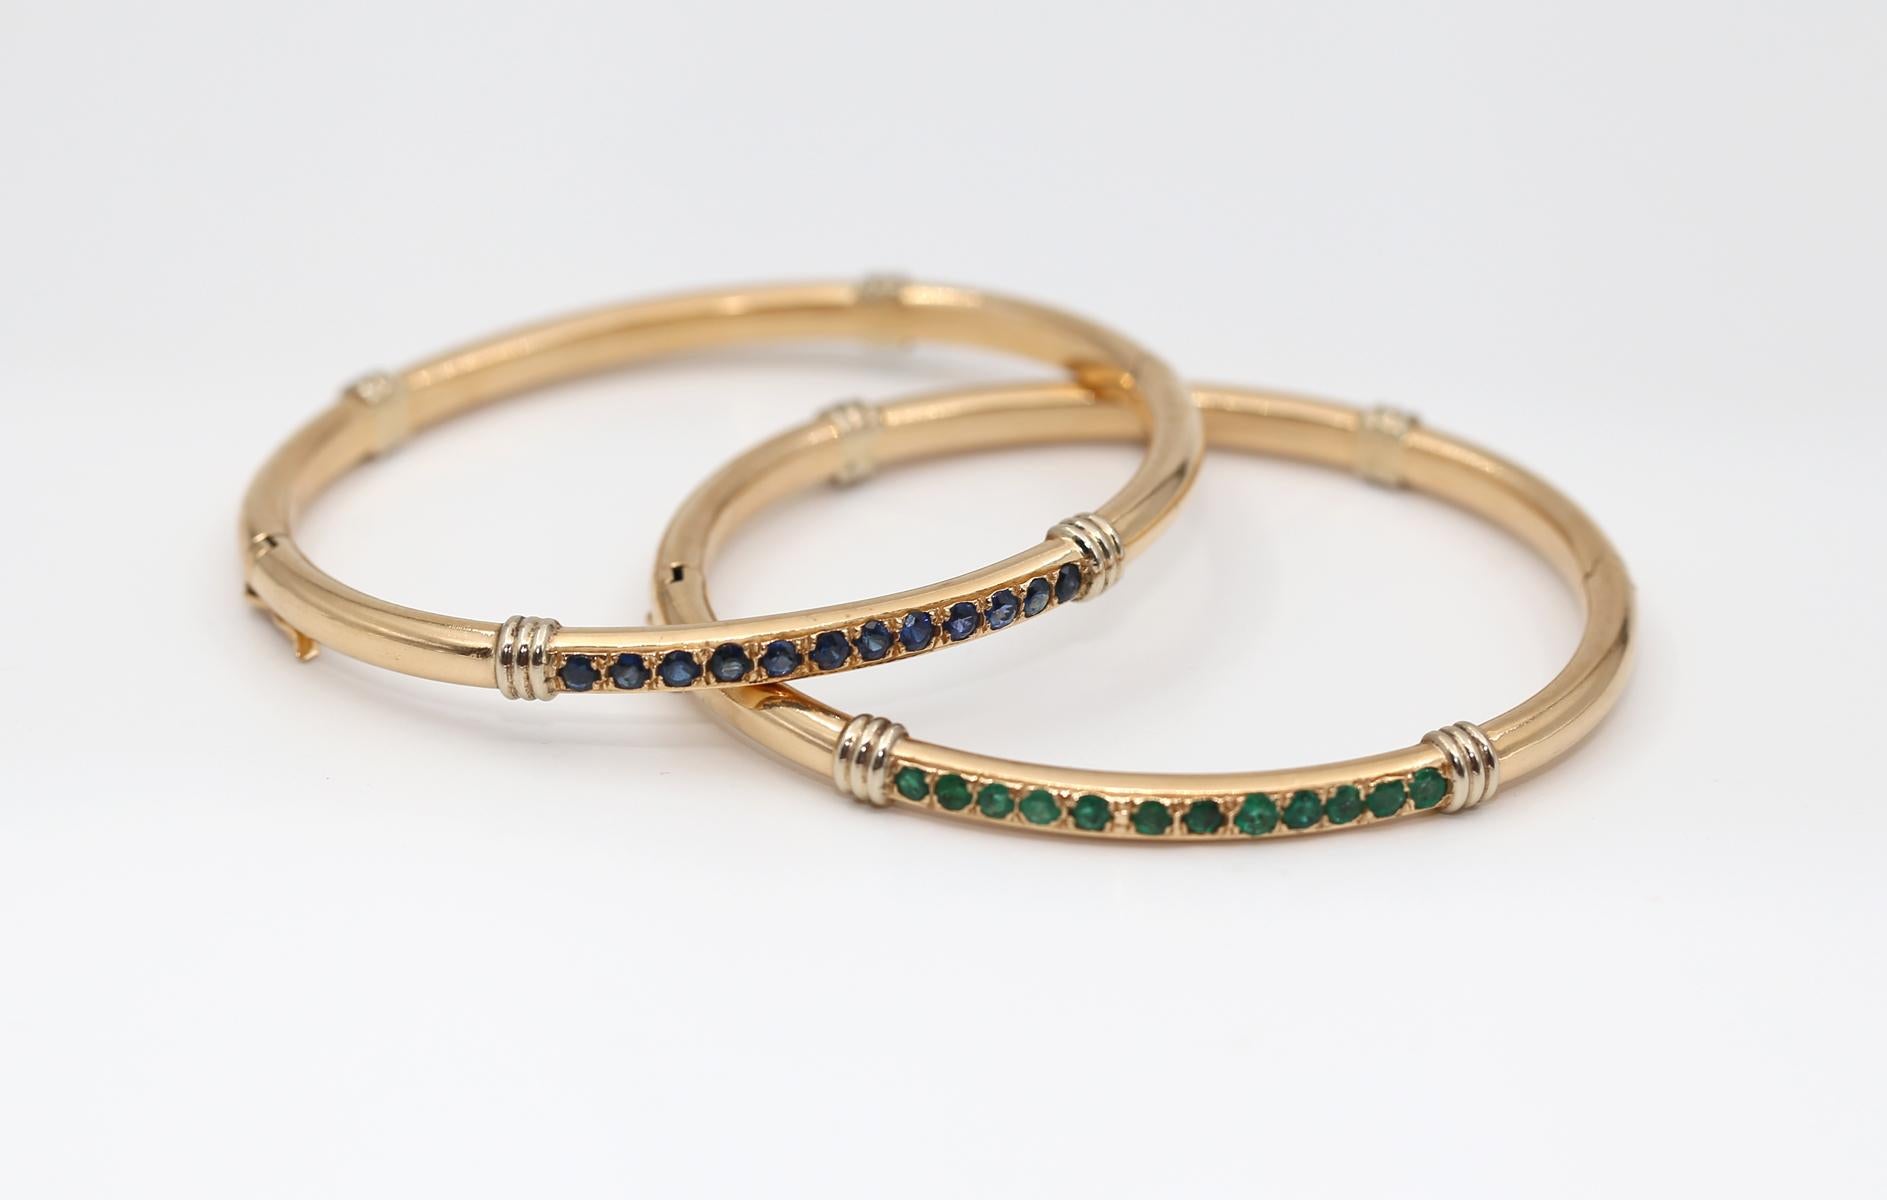 Jedes Armband ist mit einer Reihe von 12 Smaragden und Saphiren im Rundschliff besetzt.
Jedes Armband hat ein feines, schweres Gewicht, und sie blinken schön, wenn sie zusammen an einer Hand getragen werden. Das Paar ist ein modisches Statement und